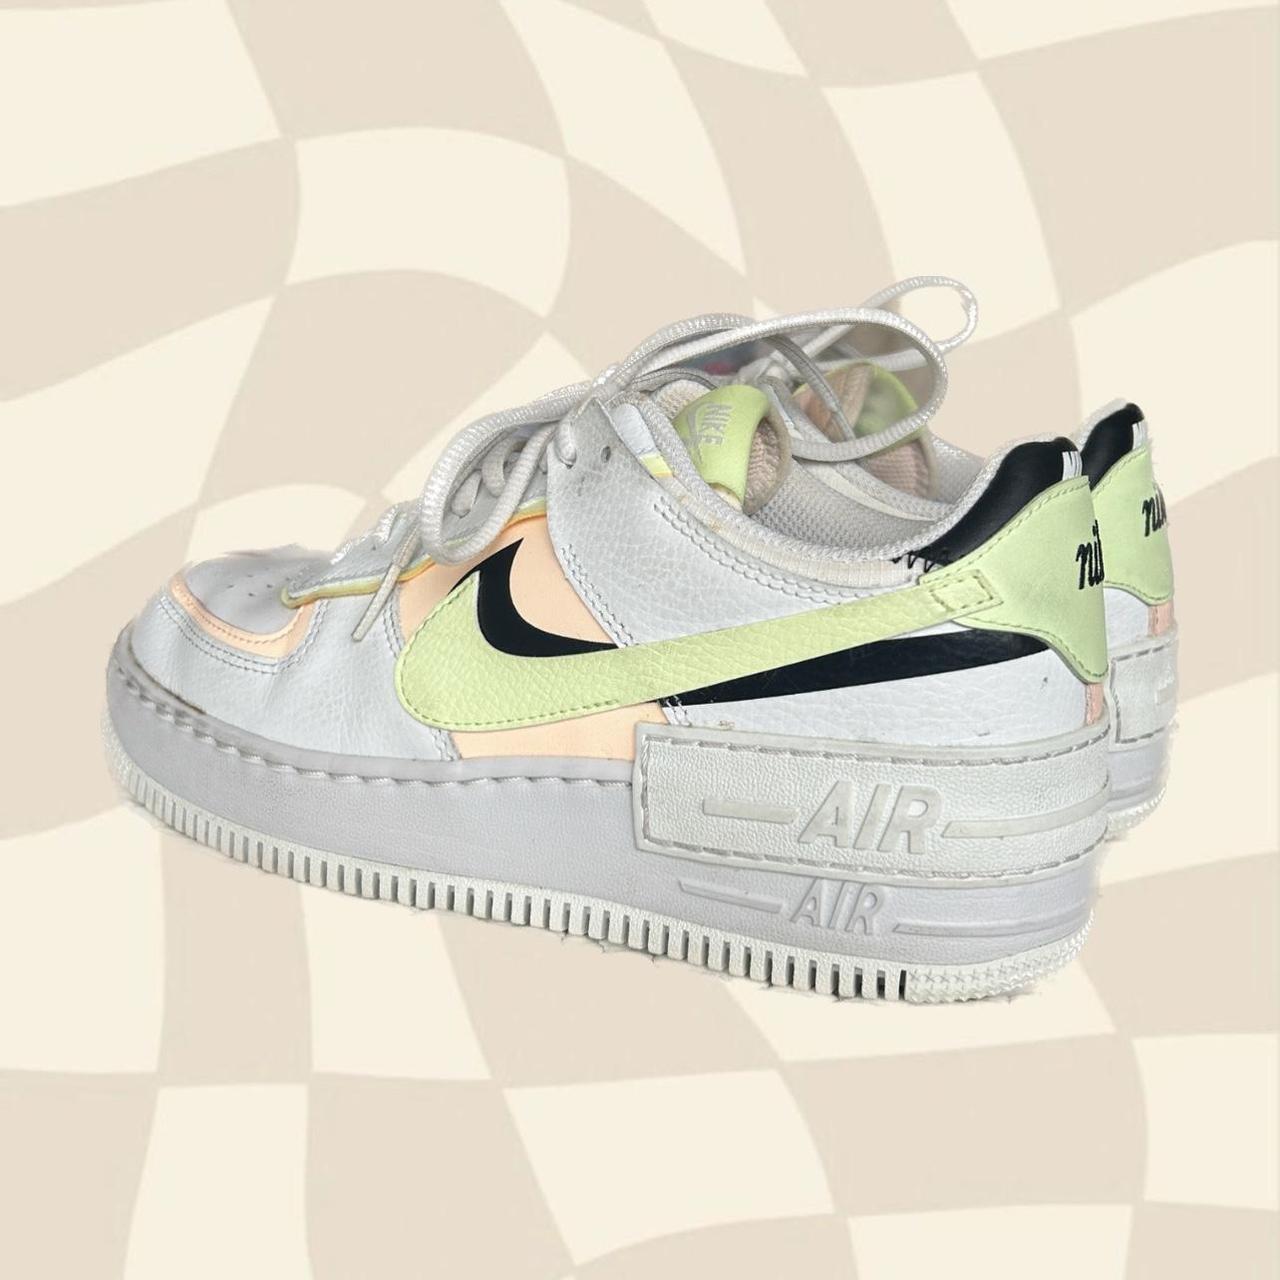 Nike Air Force 1 Shadow Sneakers in pastels-Multi